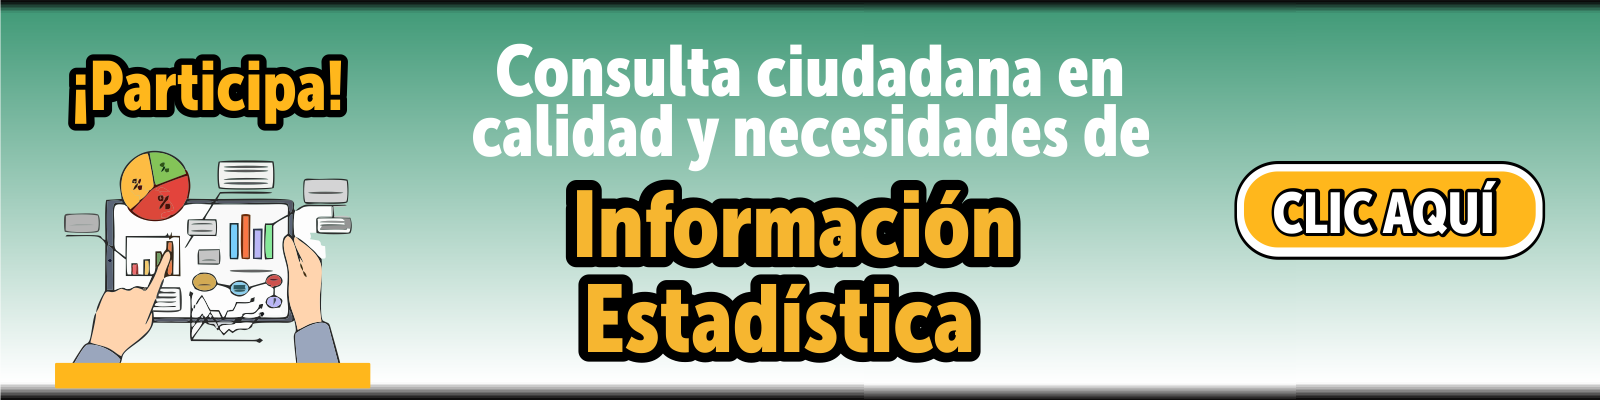 ¡Participa! Consulta ciudadana en calidad y necesidades de información estadística